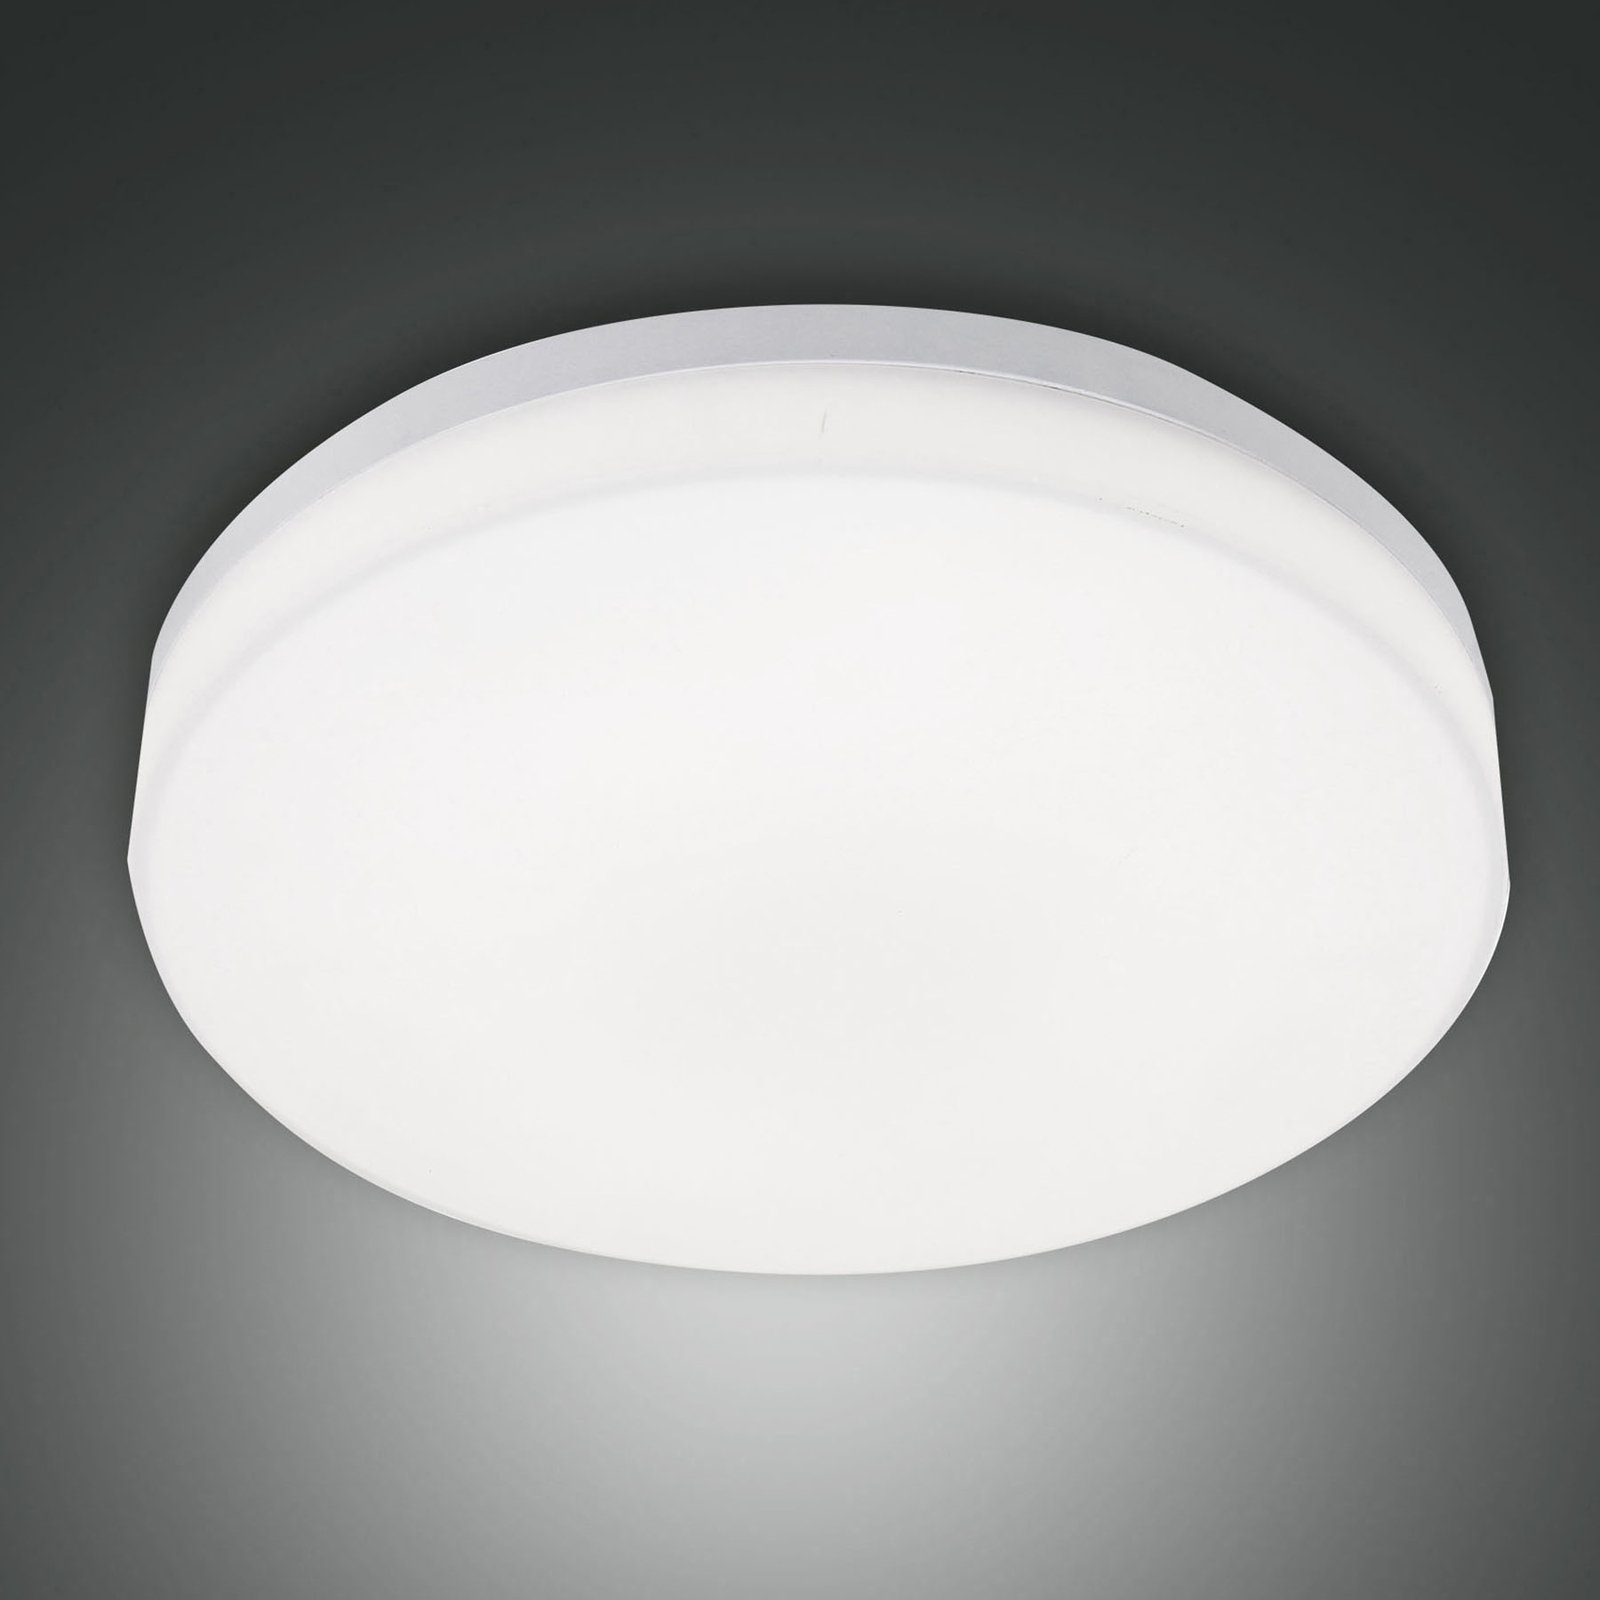 LED outdoor ceiling light Trigo, sensor, white